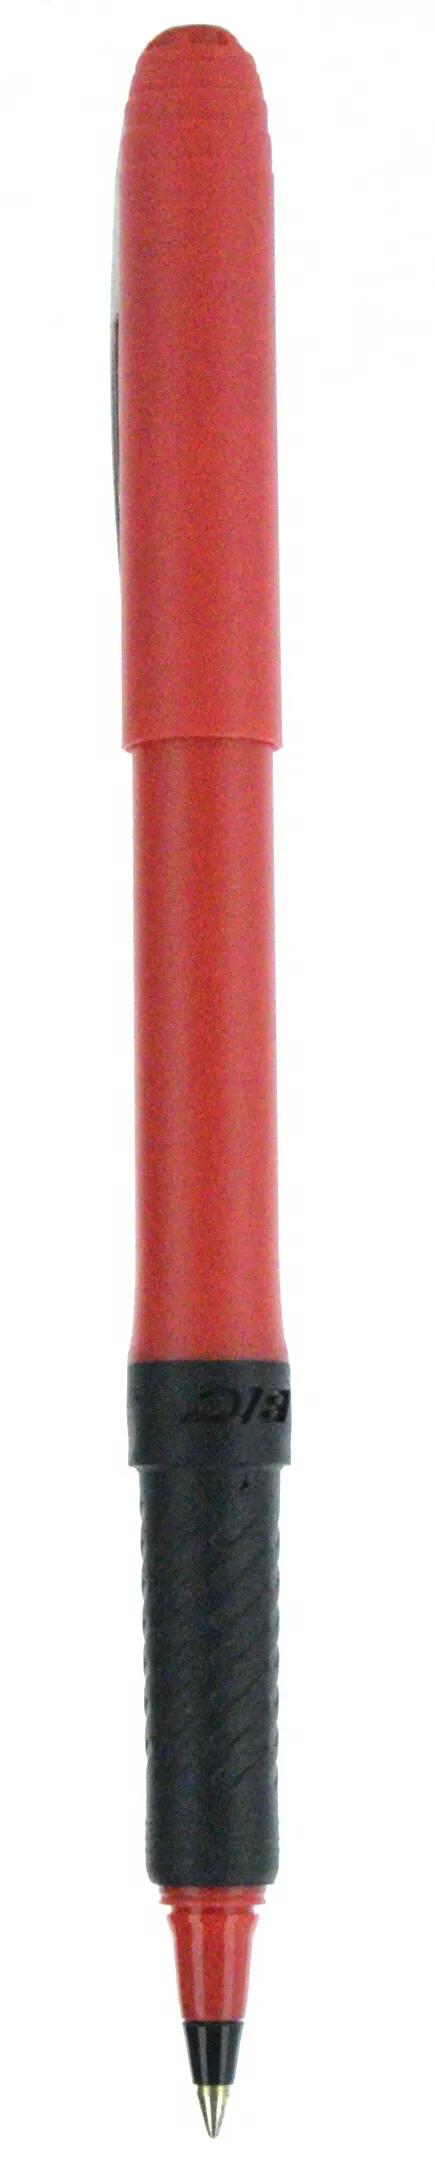 BIC® Grip Roller Pen 87 of 147